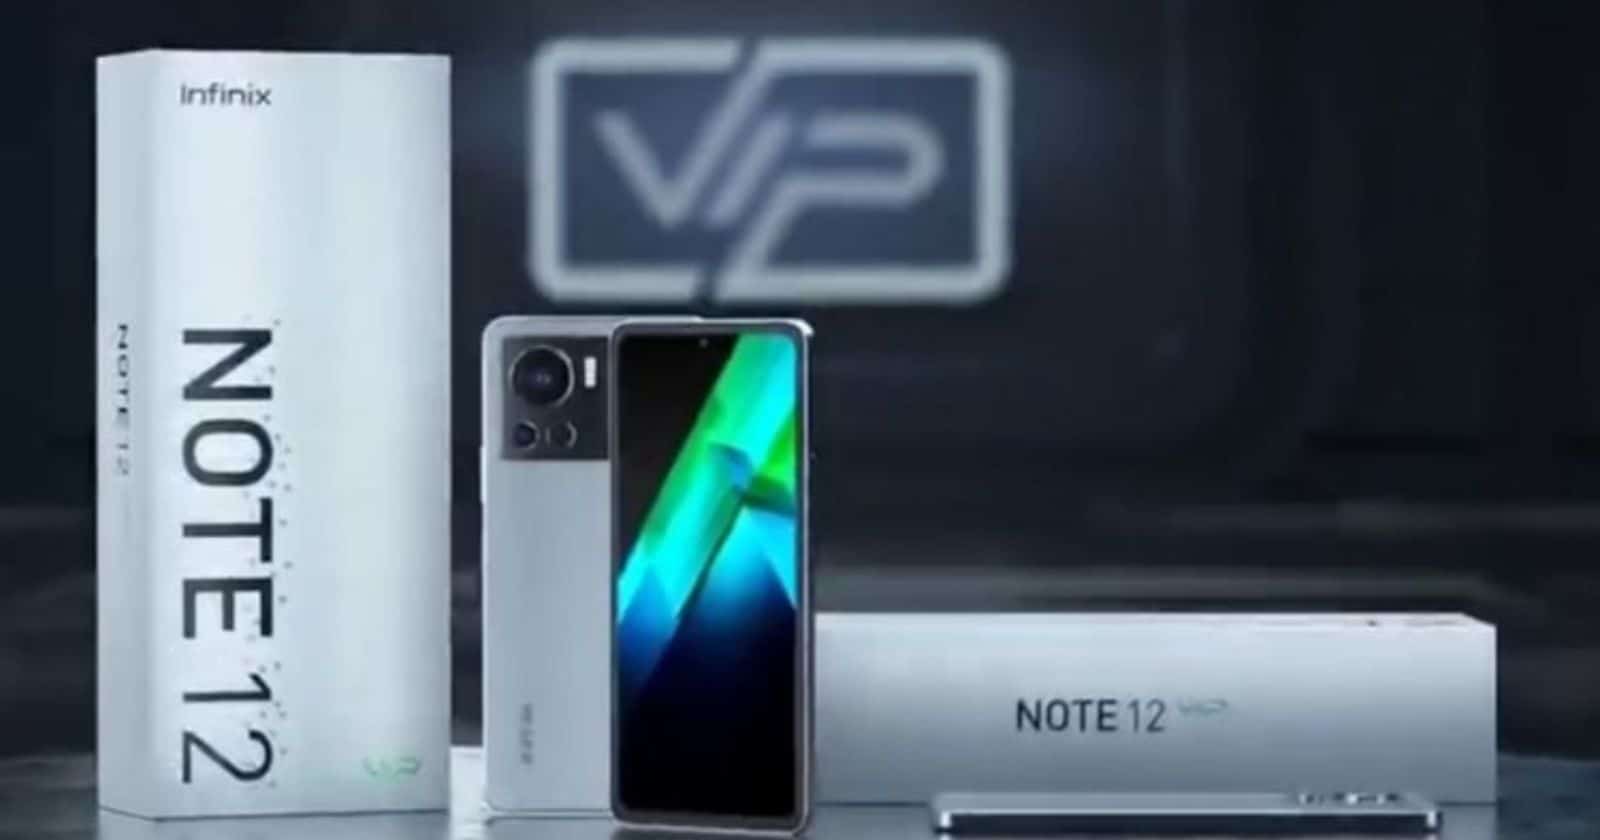 Fitur Infinix Note 12 VIP Smartphone Unik dengan Desain Premium, Kamera Berkualitas Tinggi, dan Pengisian Cepat 120W